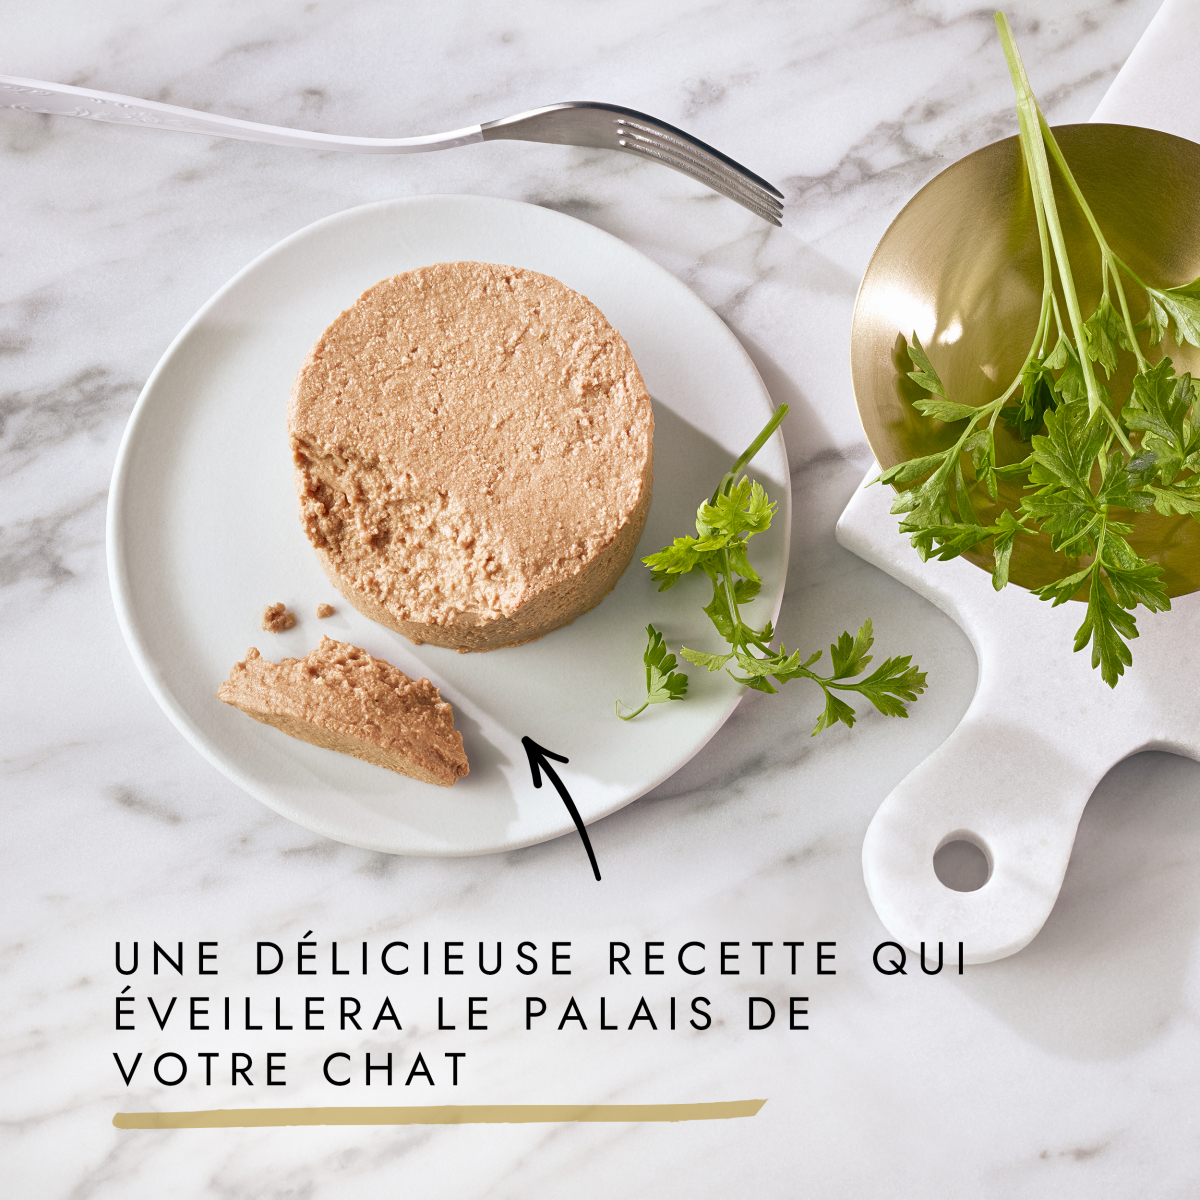 Gourmet - Boîte Gold Les Mousselines pour Chat - 12x85g